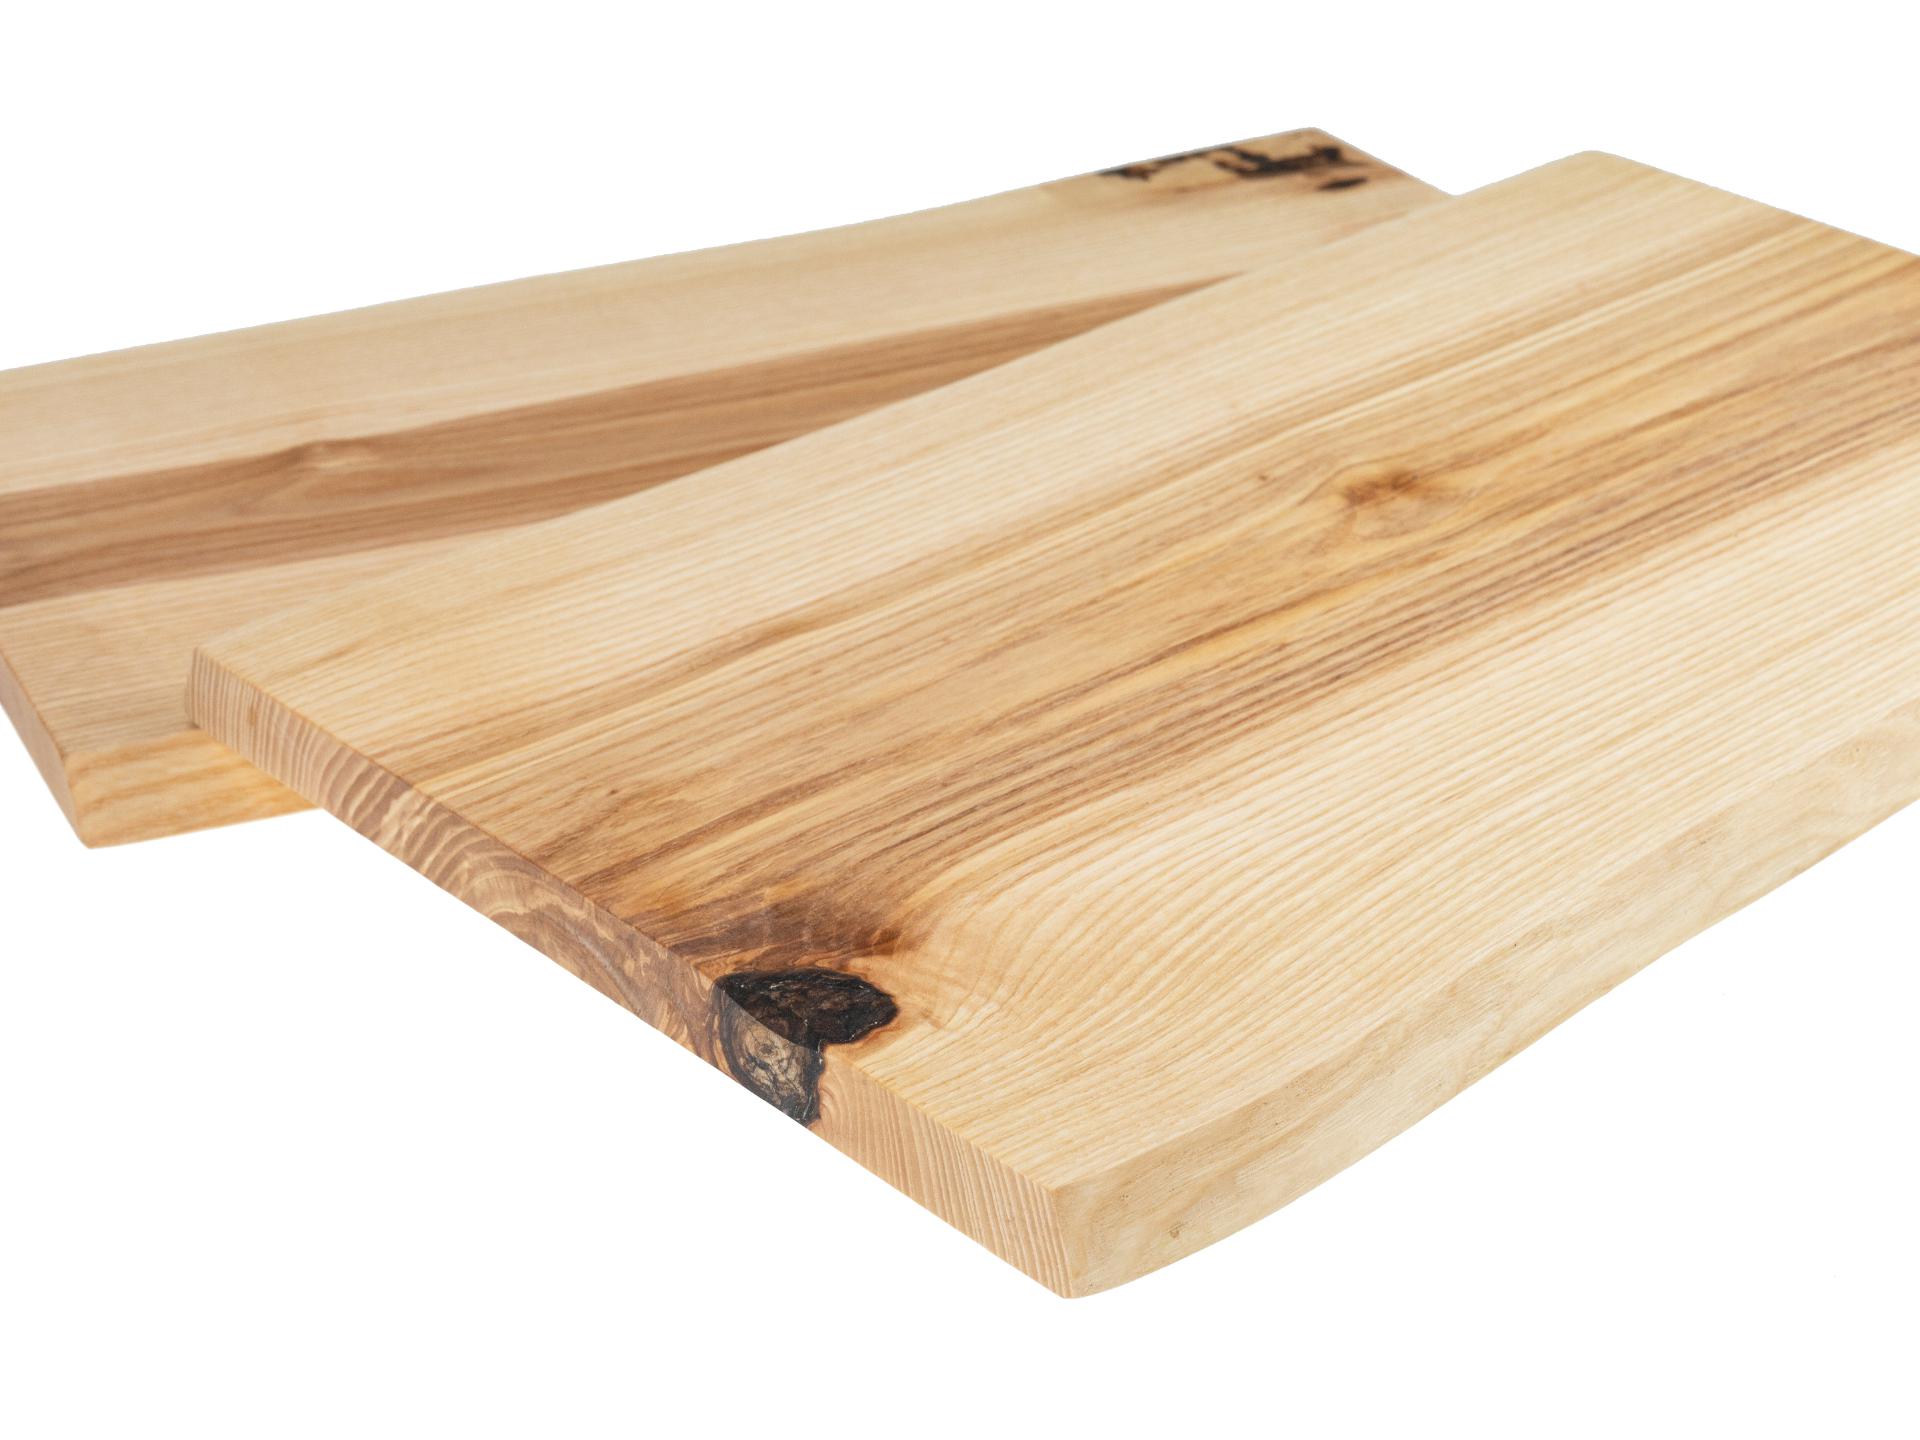 Holz Schneidebrett aus Kern Esche geölt mit Baumkante geschliffen 22mm dick 47 x 25-30 cm